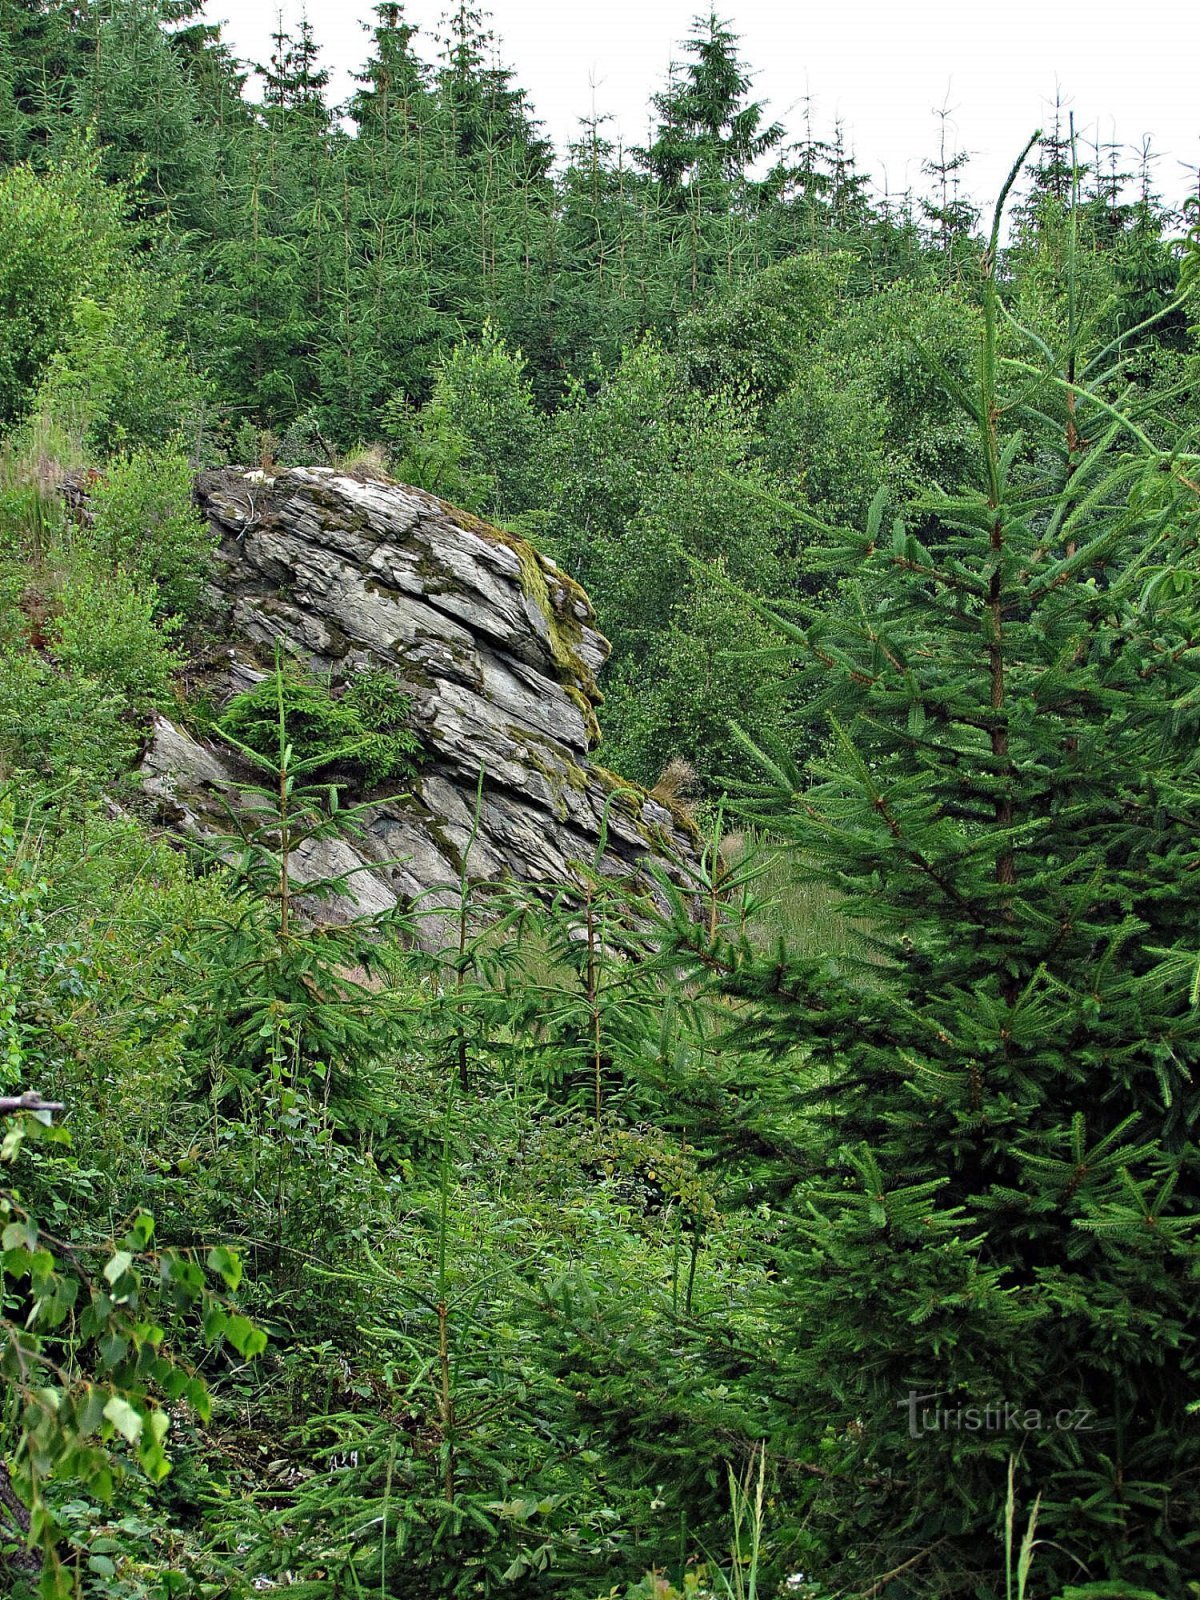 Koukalka Rocks gần Chotěboře